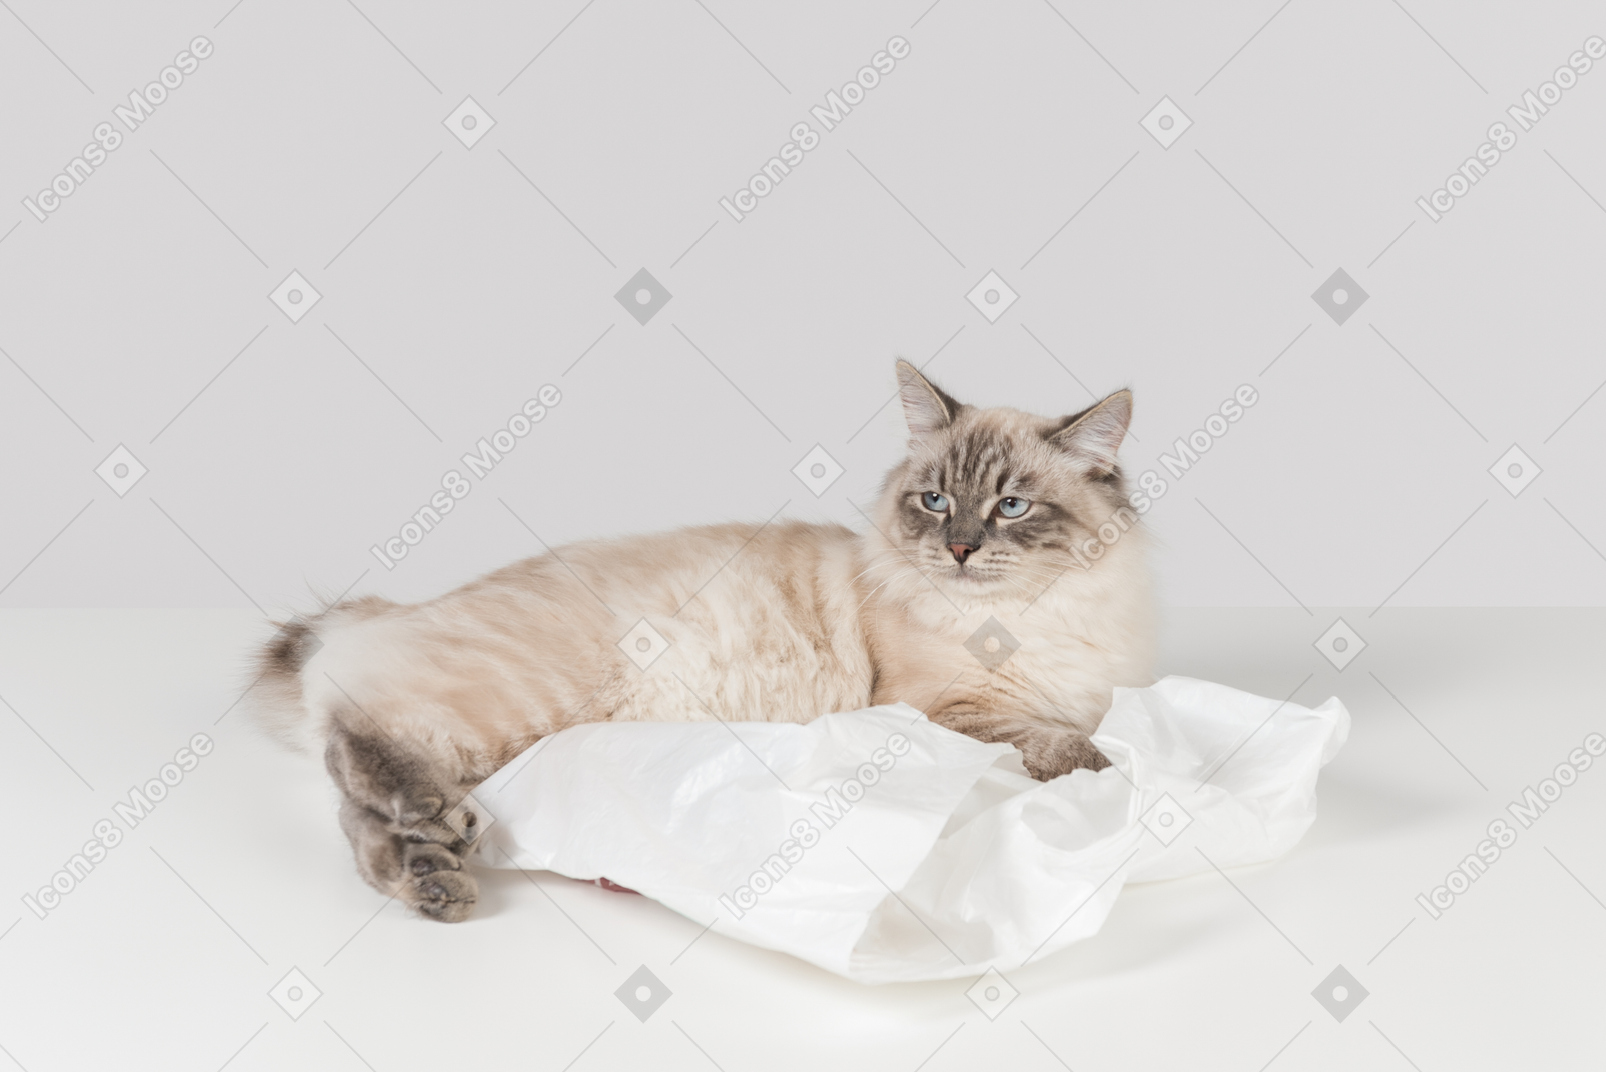 Фото Бело-коричневая тряпичная кошка, лежащая на белом полиэтиленовом пакете